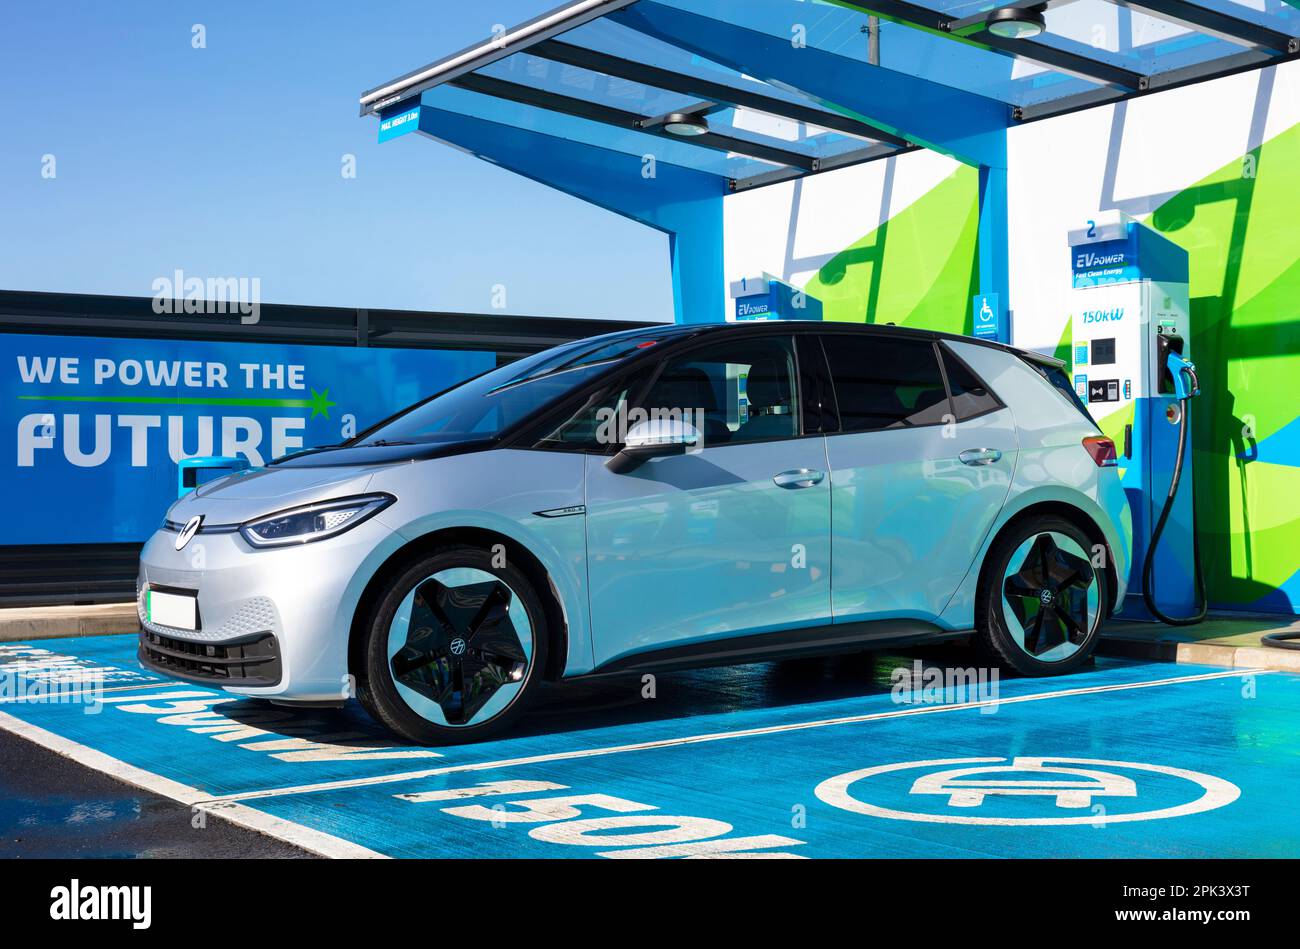 Voiture électrique Royaume-Uni - recharge de voiture électrique à un chargeur de voiture électrique public dans une station de charge de MFG EV Power au Royaume-Uni Banque D'Images